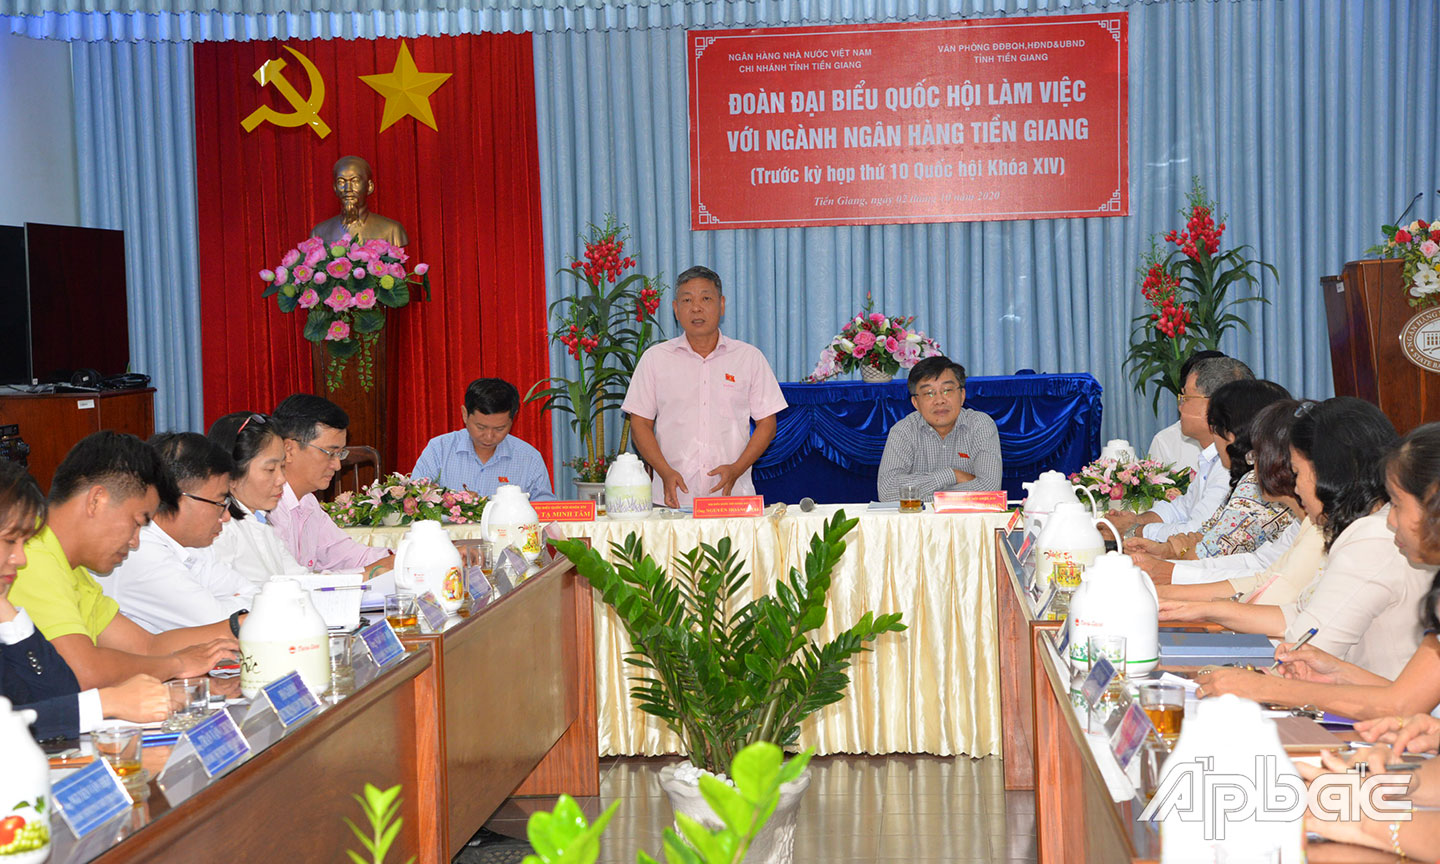 Đoàn ĐBQH đơn vị tỉnh Tiền Giang khóa XIV làm việc với ngành Ngân hàng Tiền Giang.